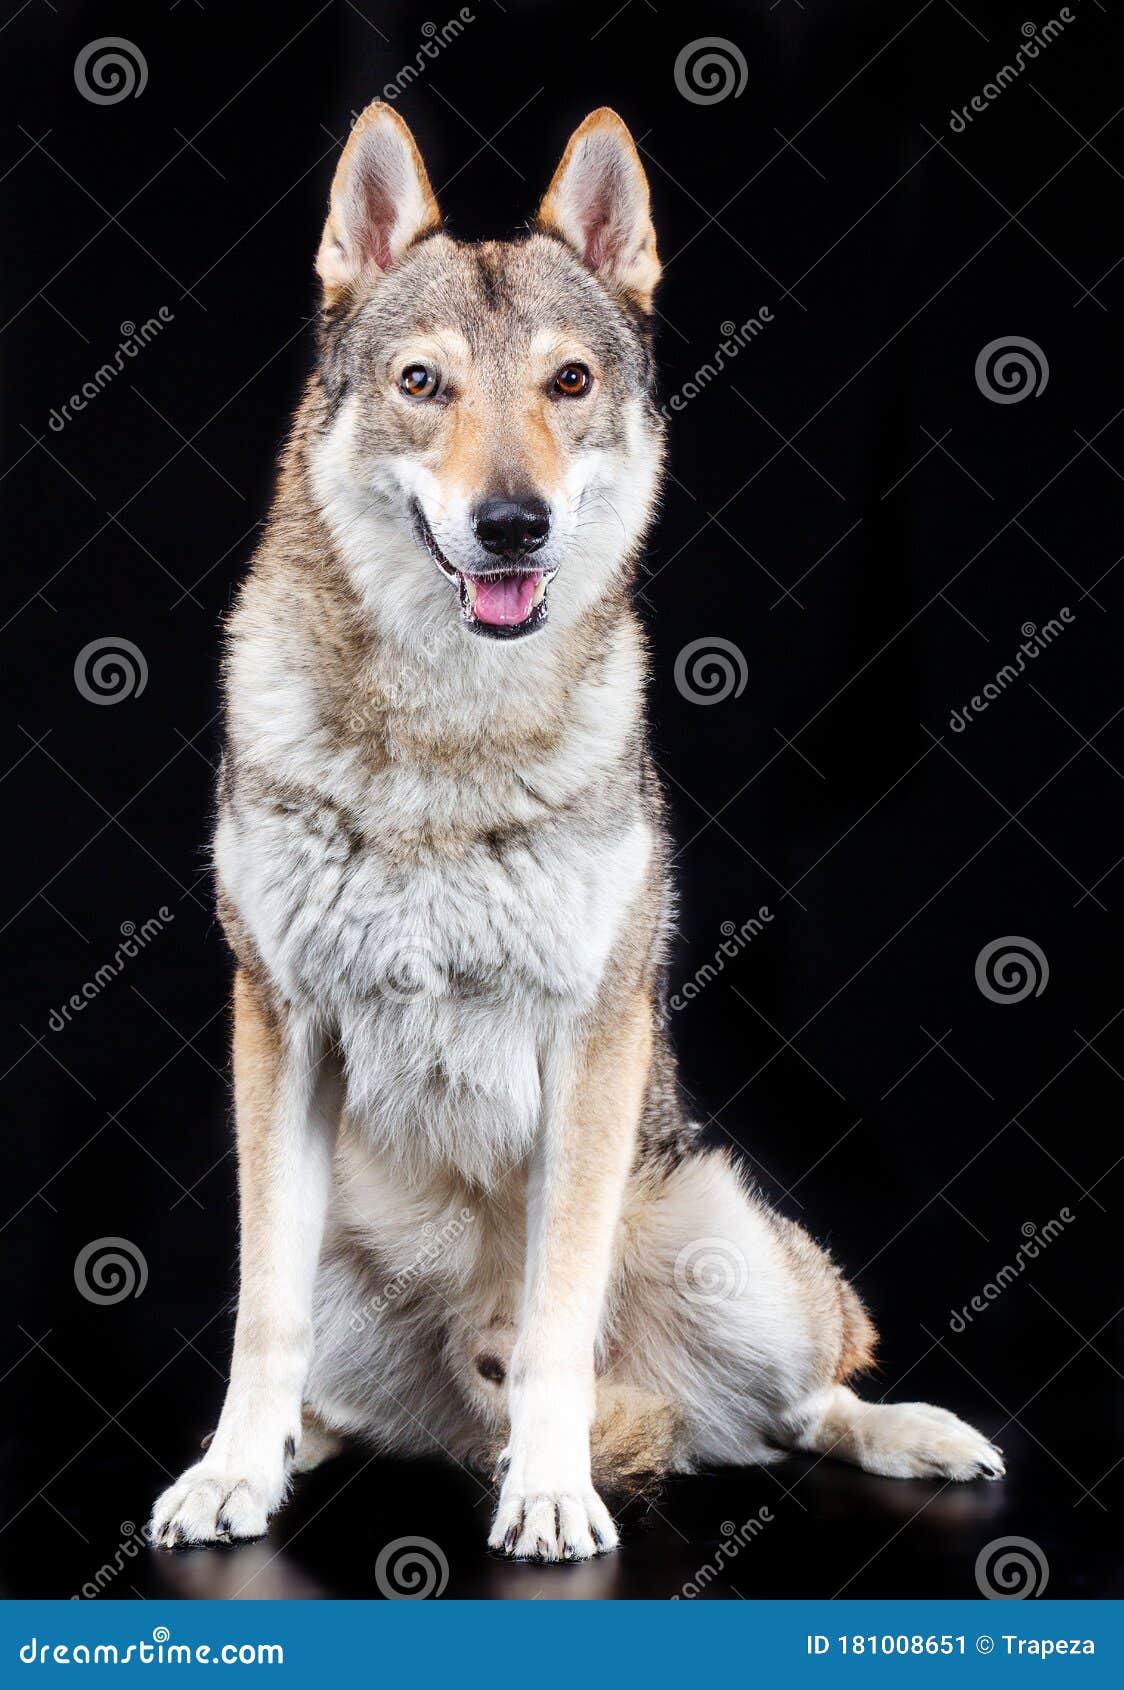 Czechoslovakian Wolfdog Dog Studio Photography On A Black Background Stock Image Image Of Face Lupus 181008651